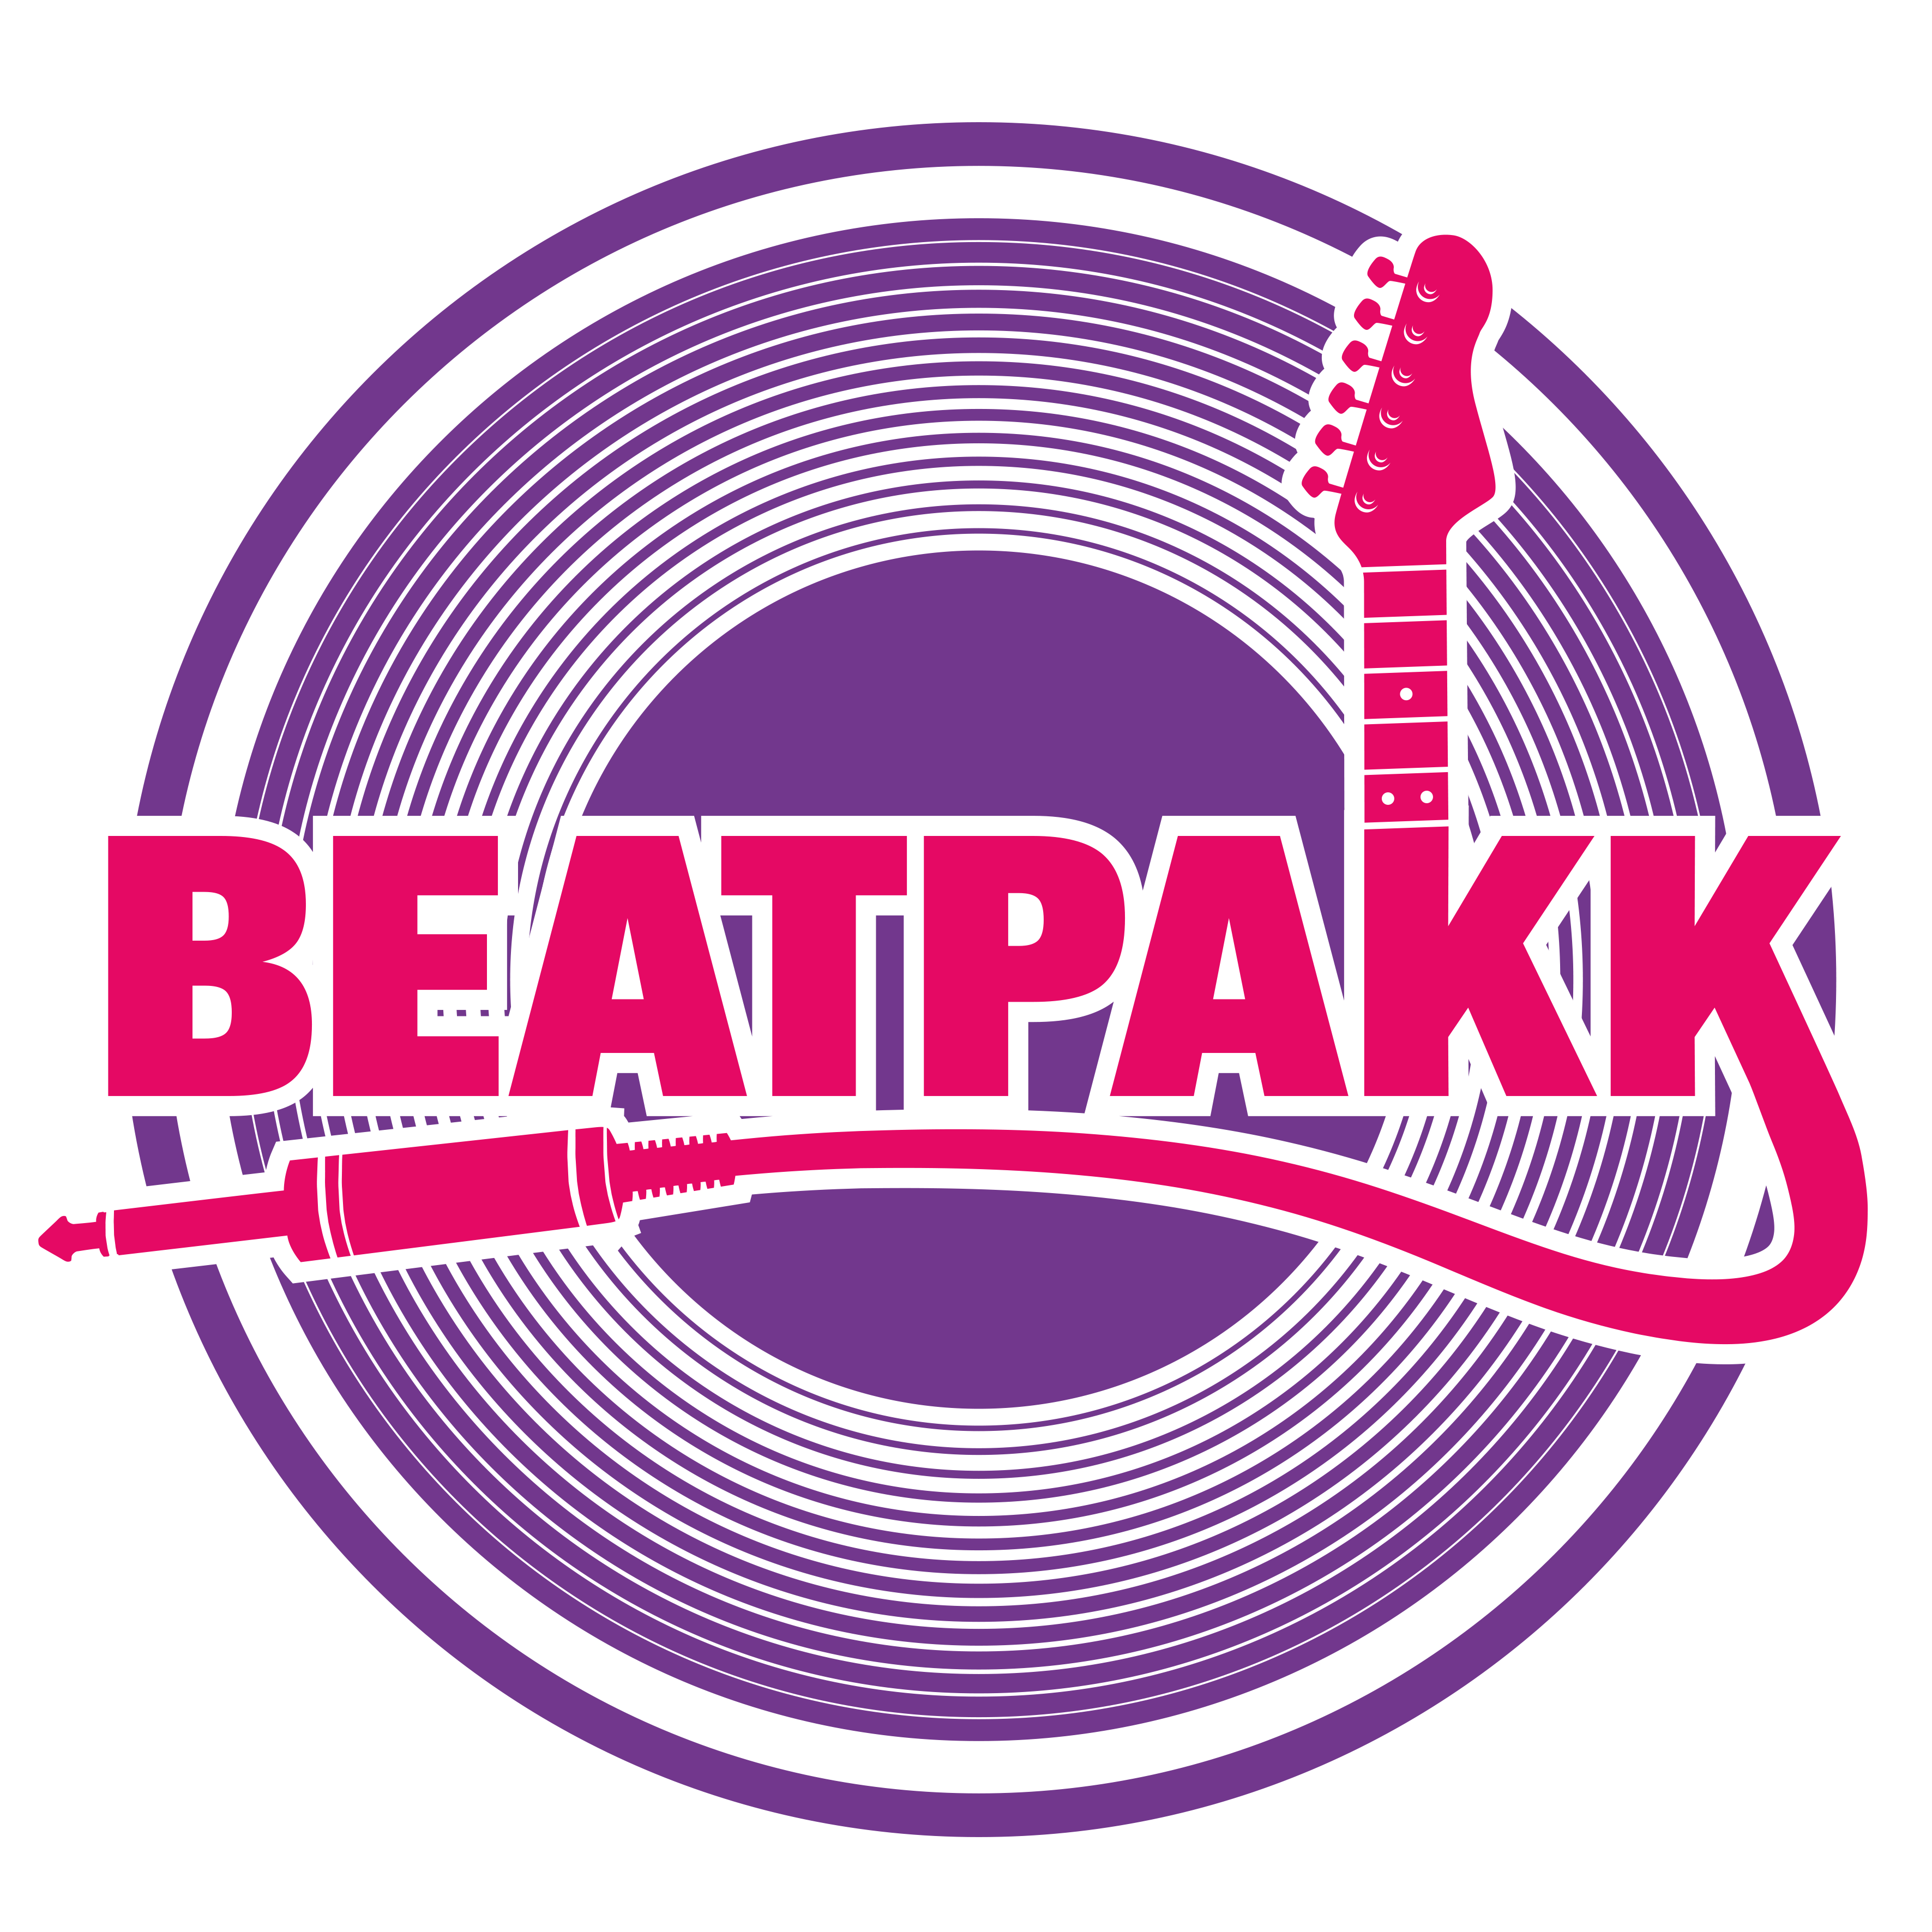 BeatPakk - Die Partyband in Dortmund